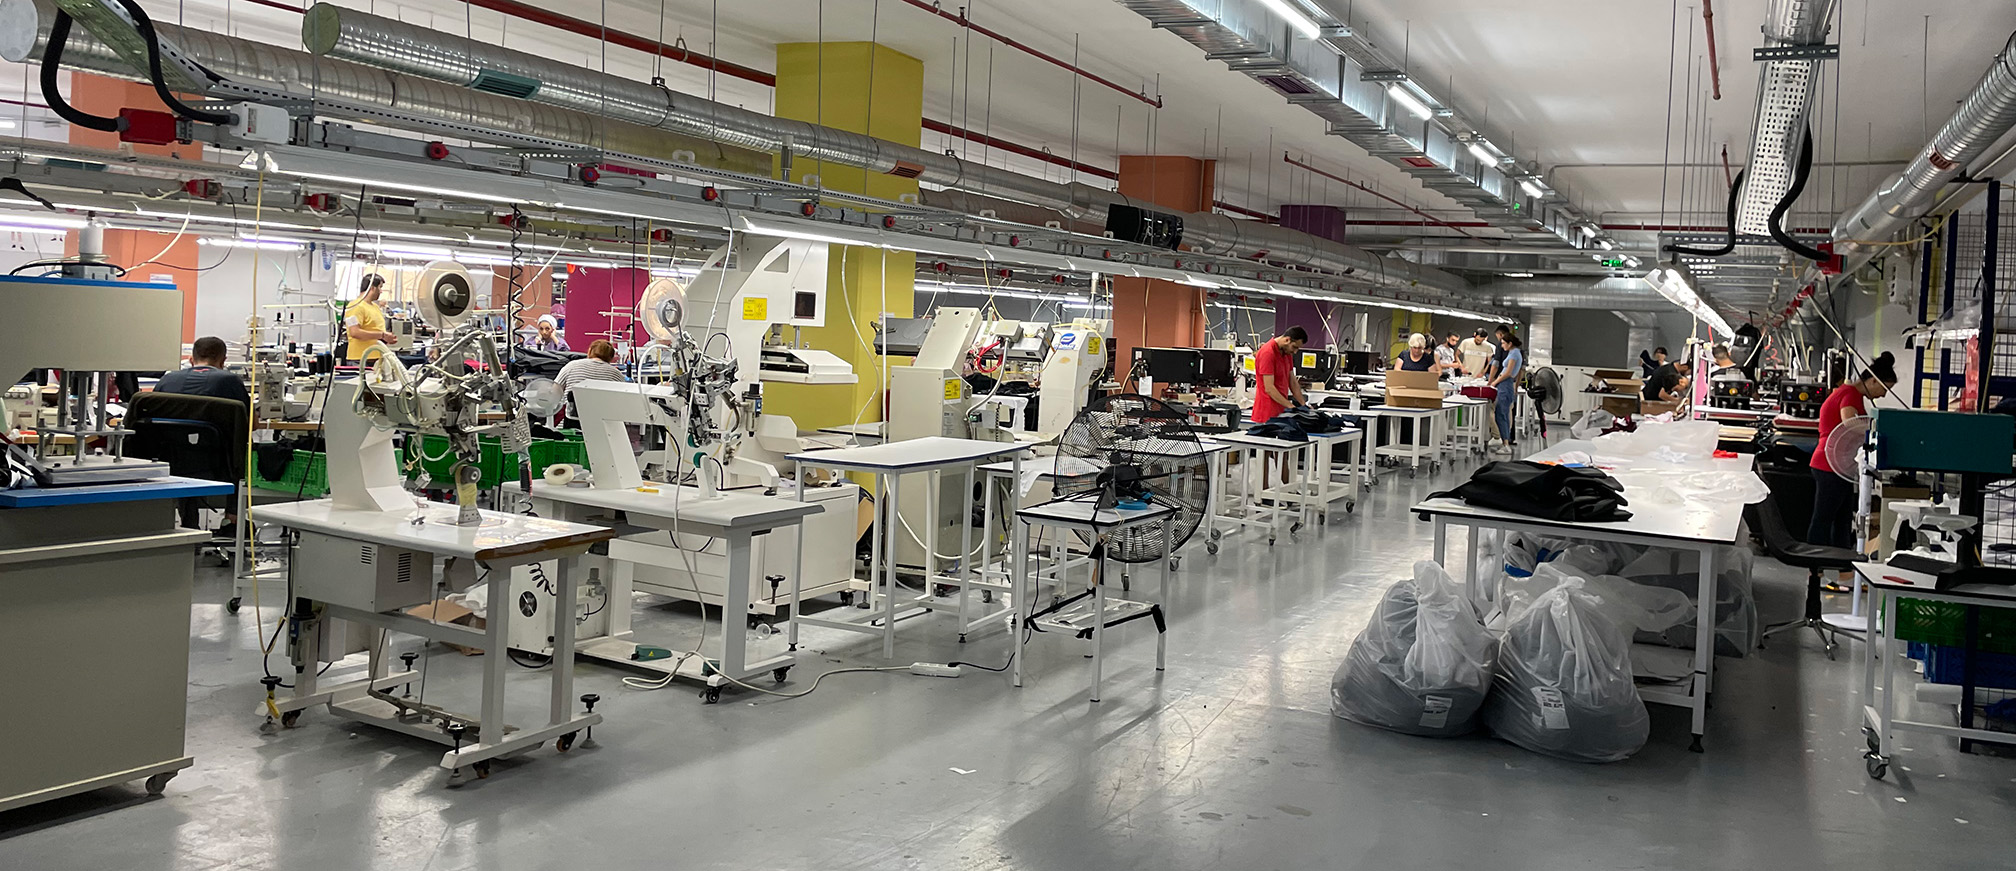 Produktion für textile Artikel mit Nähmaschinen